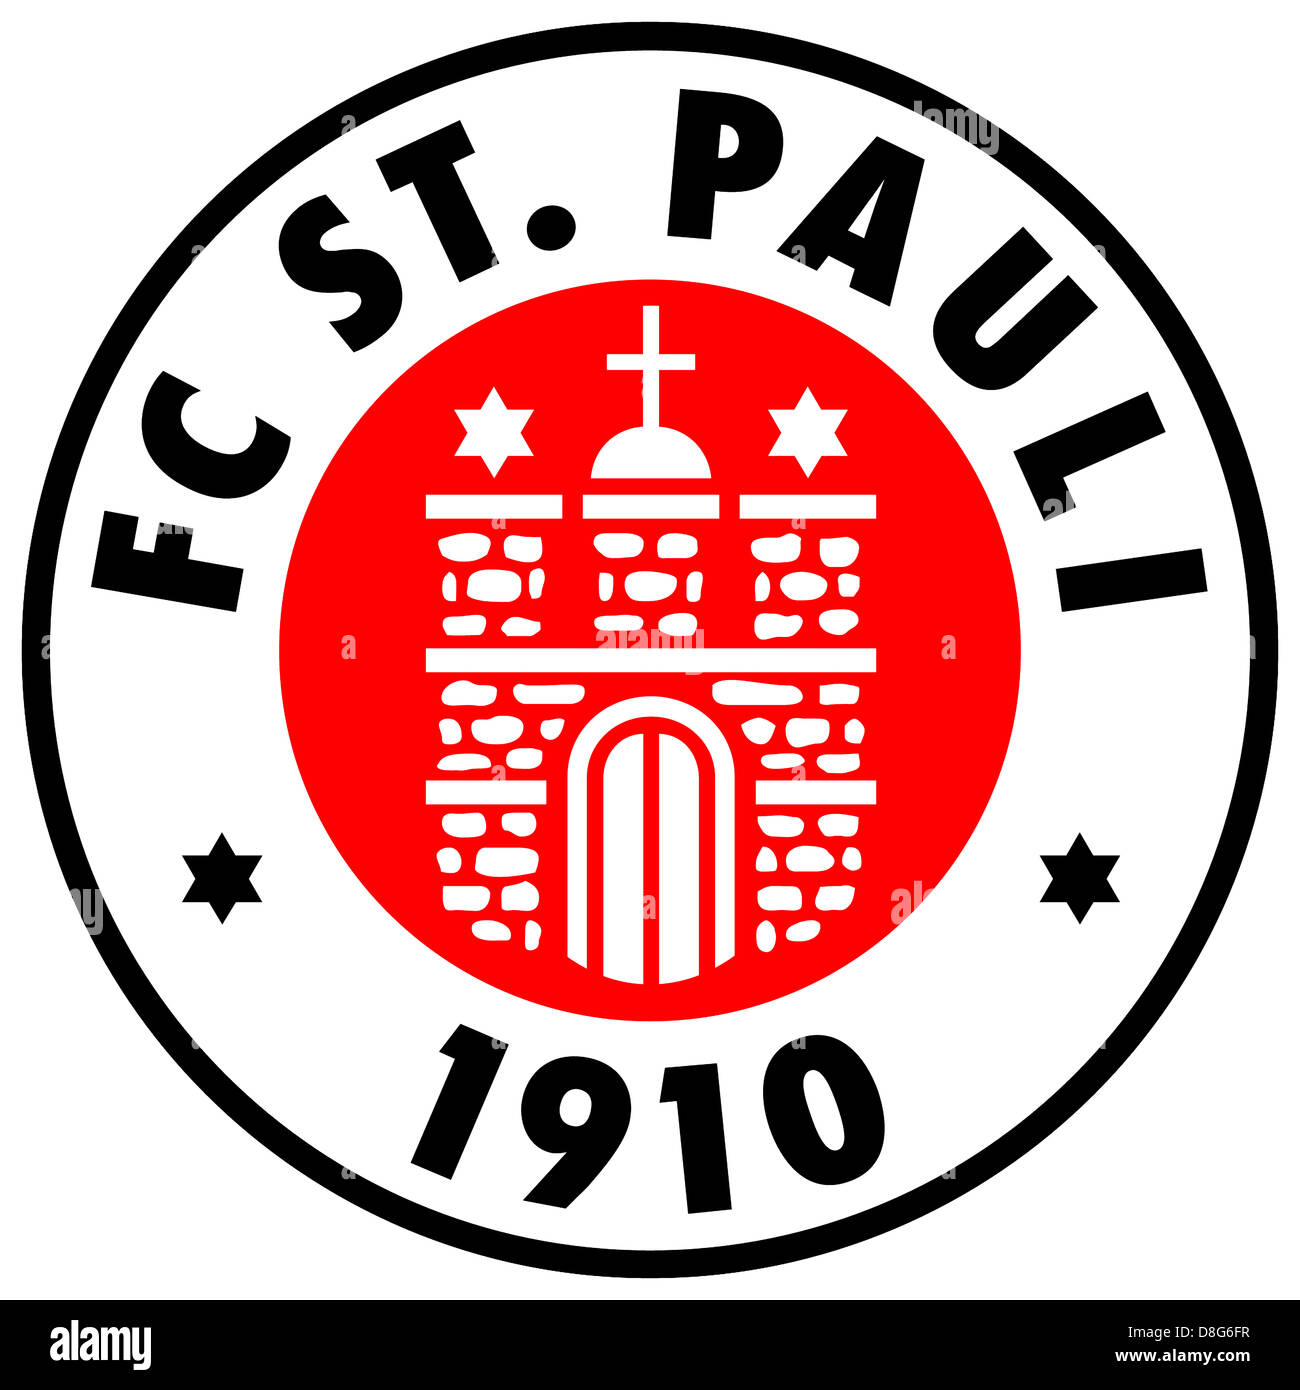 Il logo del tedesco squadra di calcio FC St Pauli 1910. Foto Stock